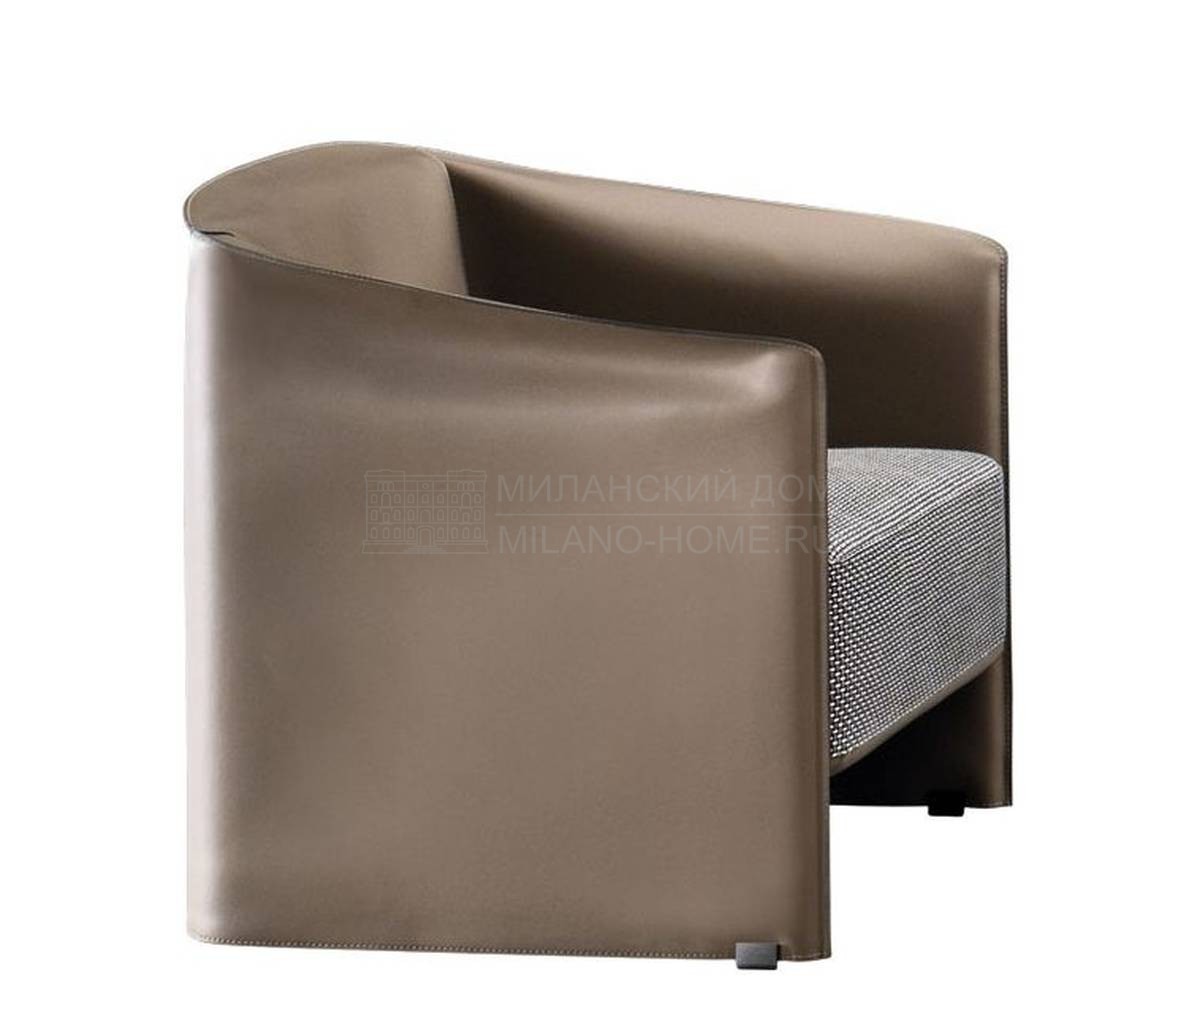 Кресло Case armchair из Италии фабрики MINOTTI